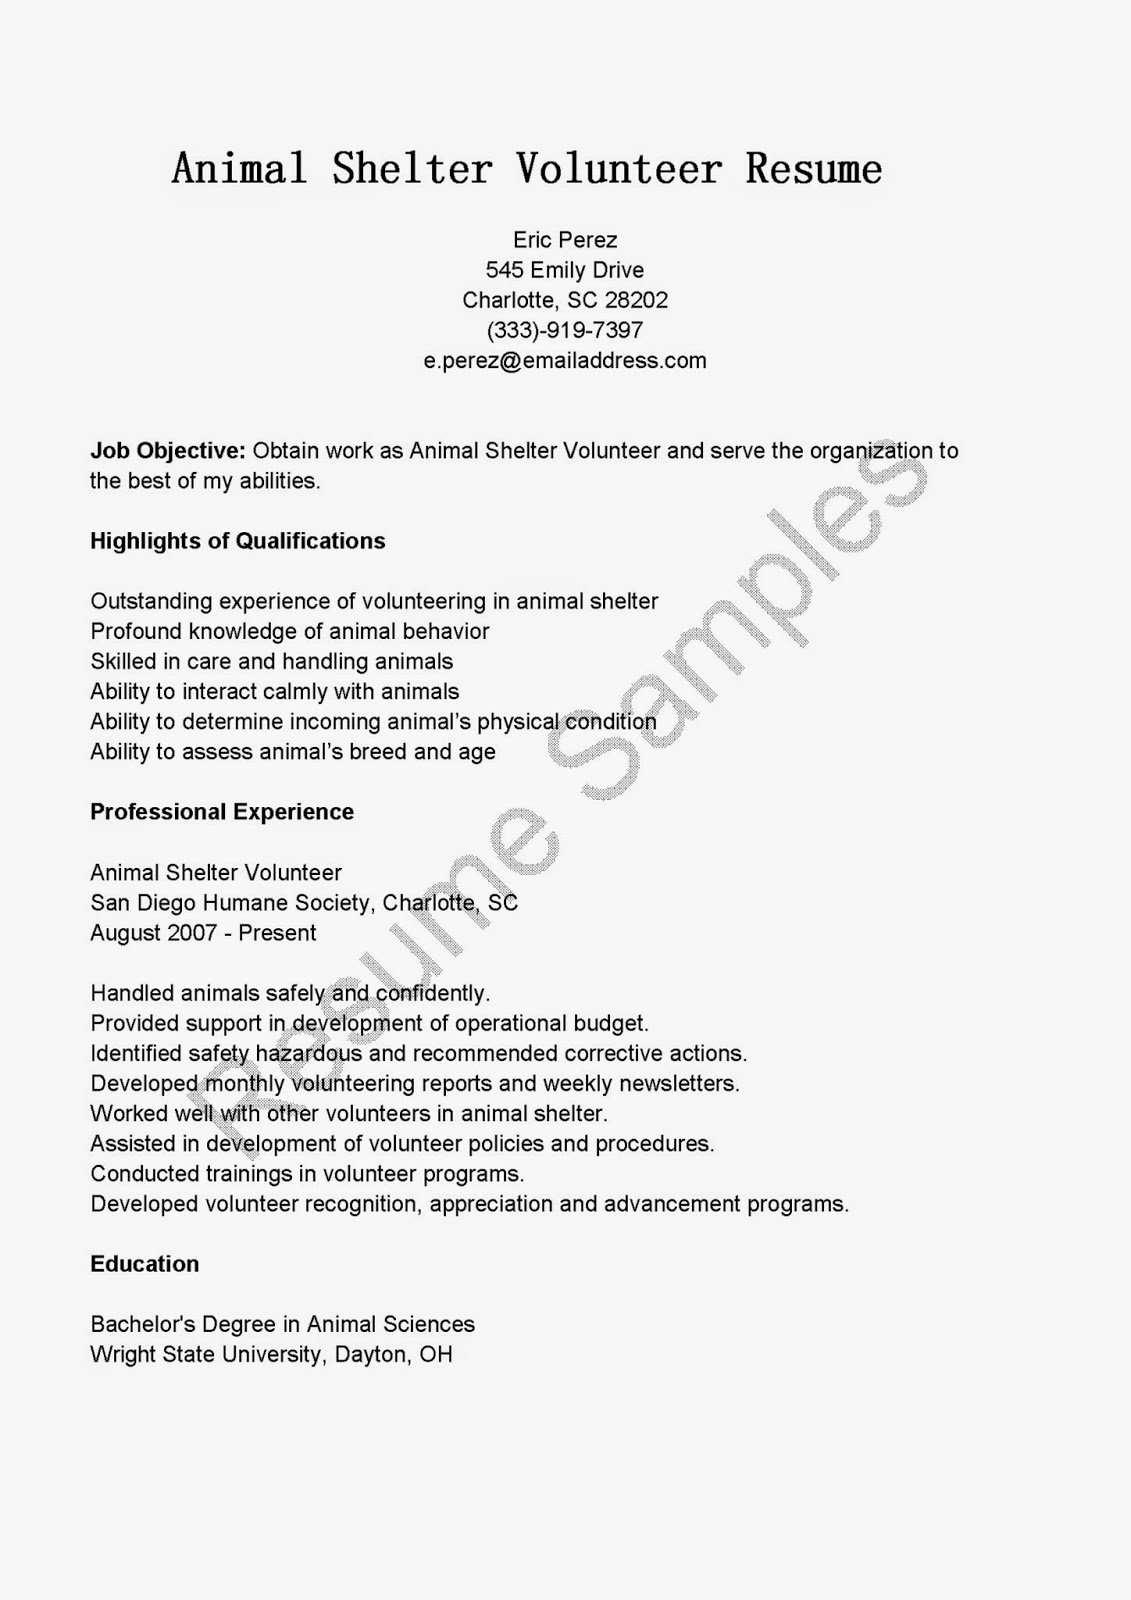 Sample resume for volunteer nurses